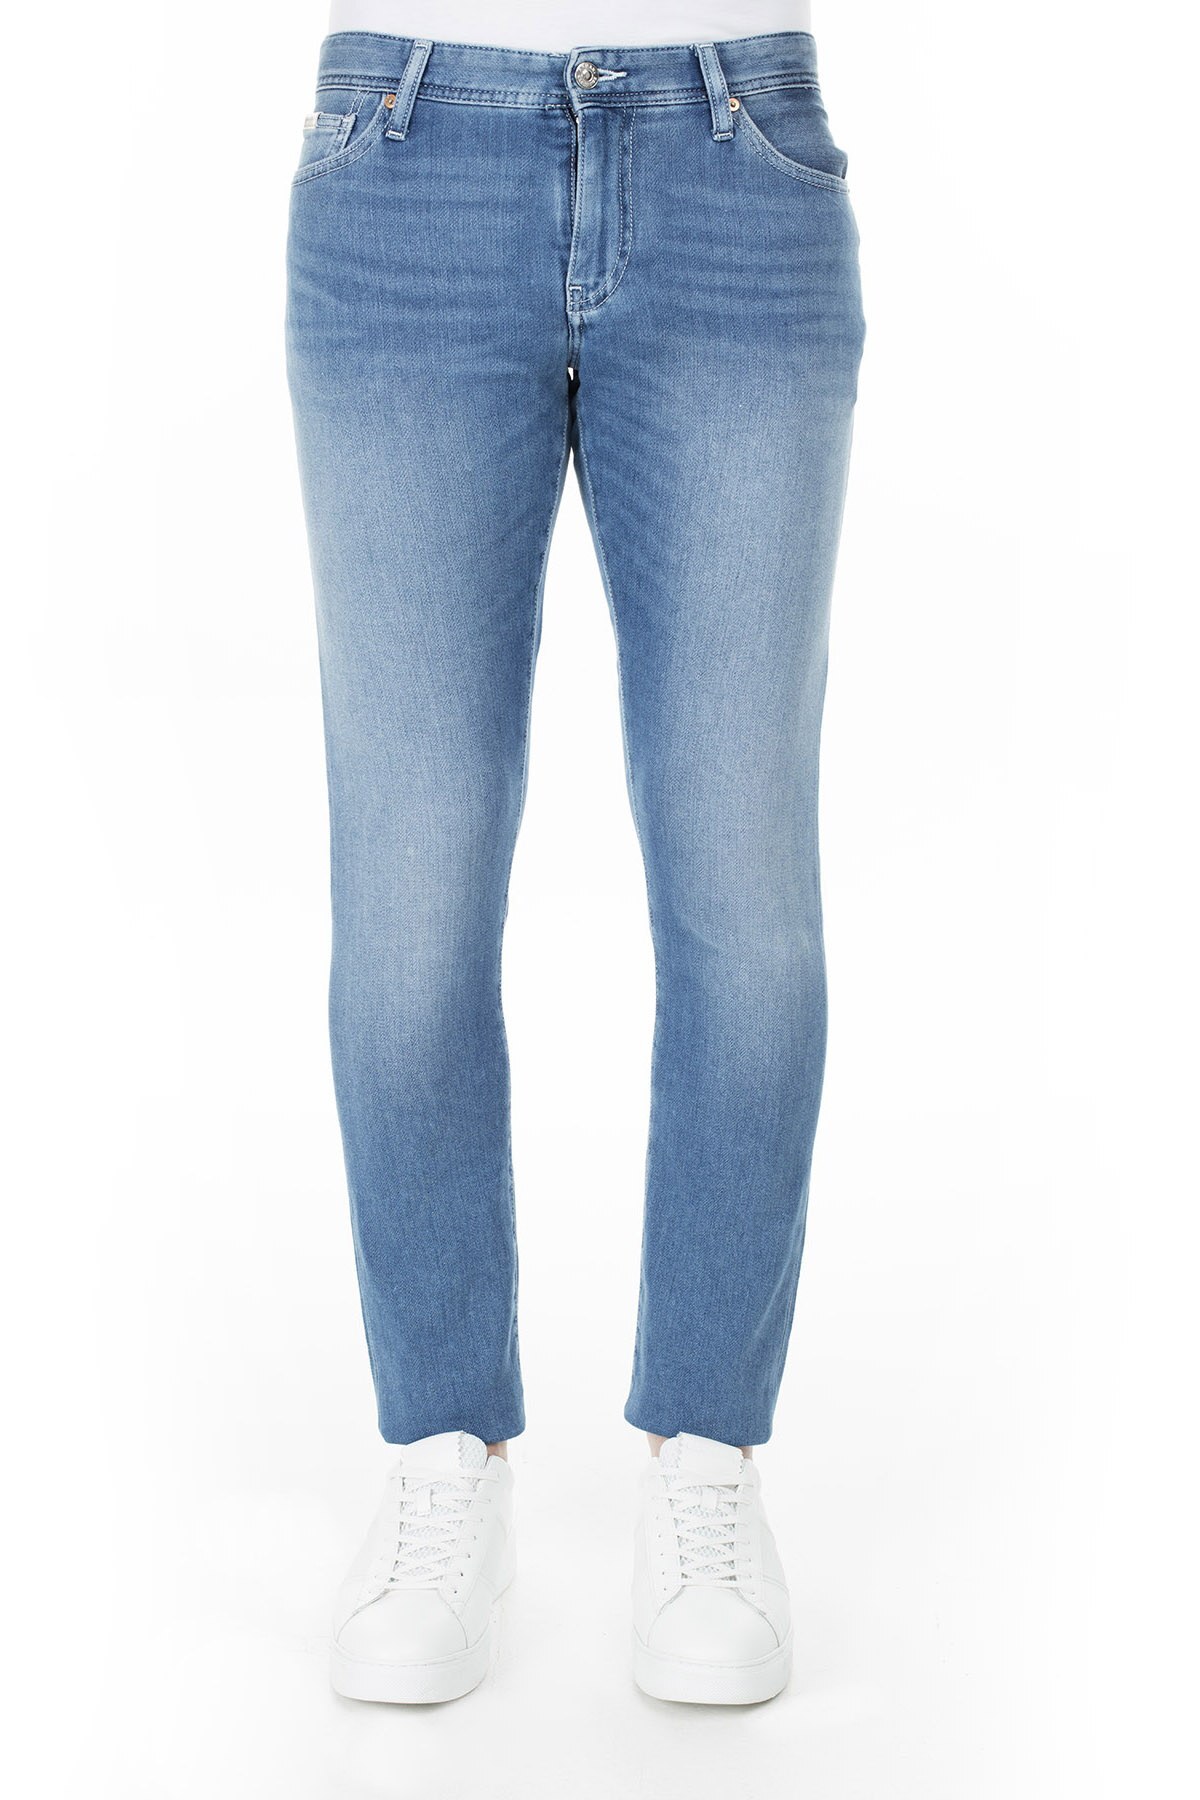 Armani Exchange J14 Jeans Erkek Kot Pantolon 3HZJ14 Z2QMZ 1500 İNDİGO